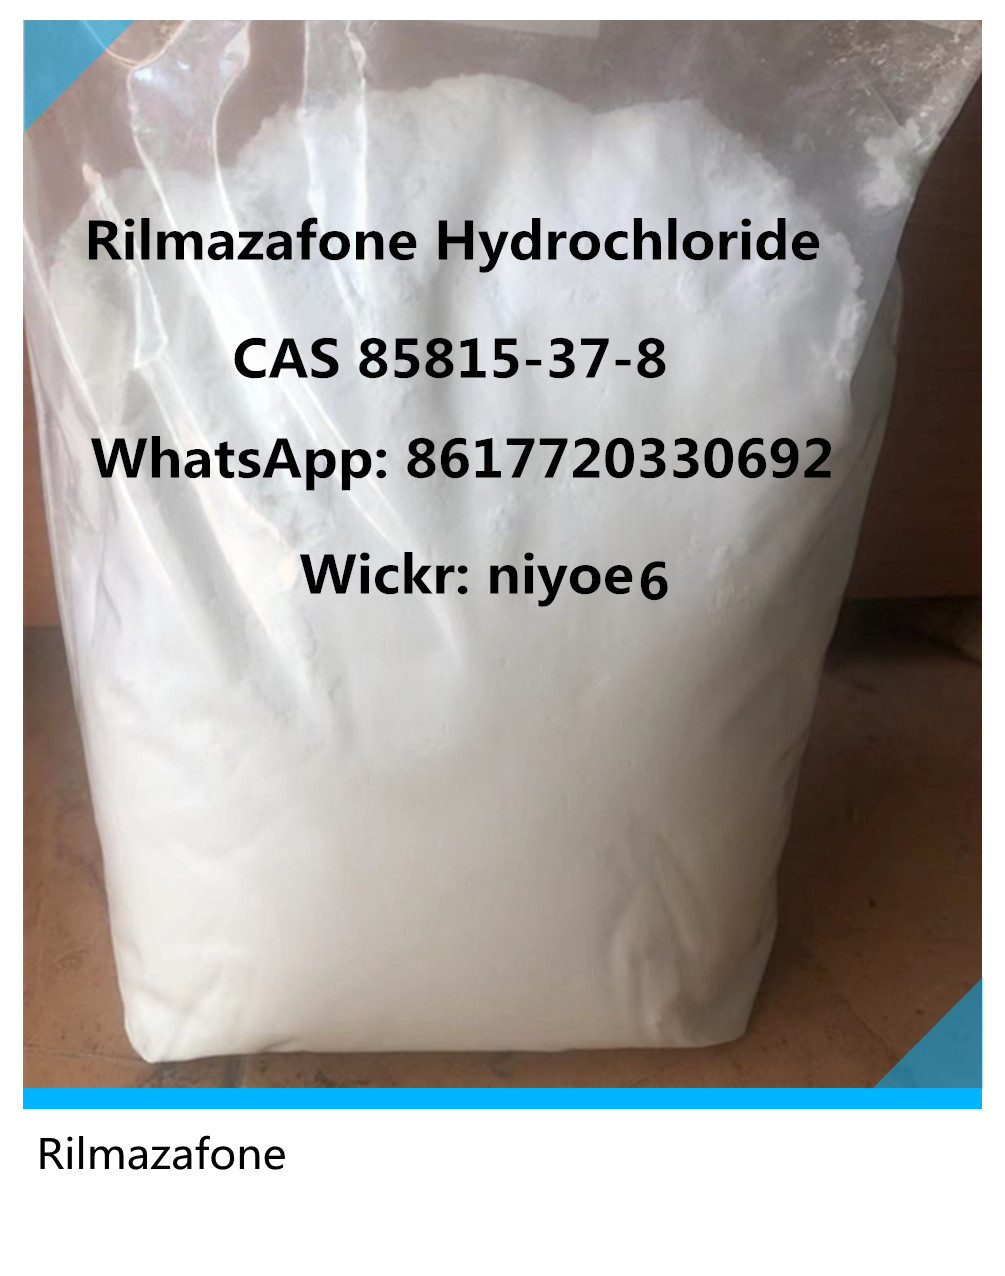 Buy White Protonitazene ISO Powder CAS 119276-01-6 for Painkiller Wickr: niyoe6